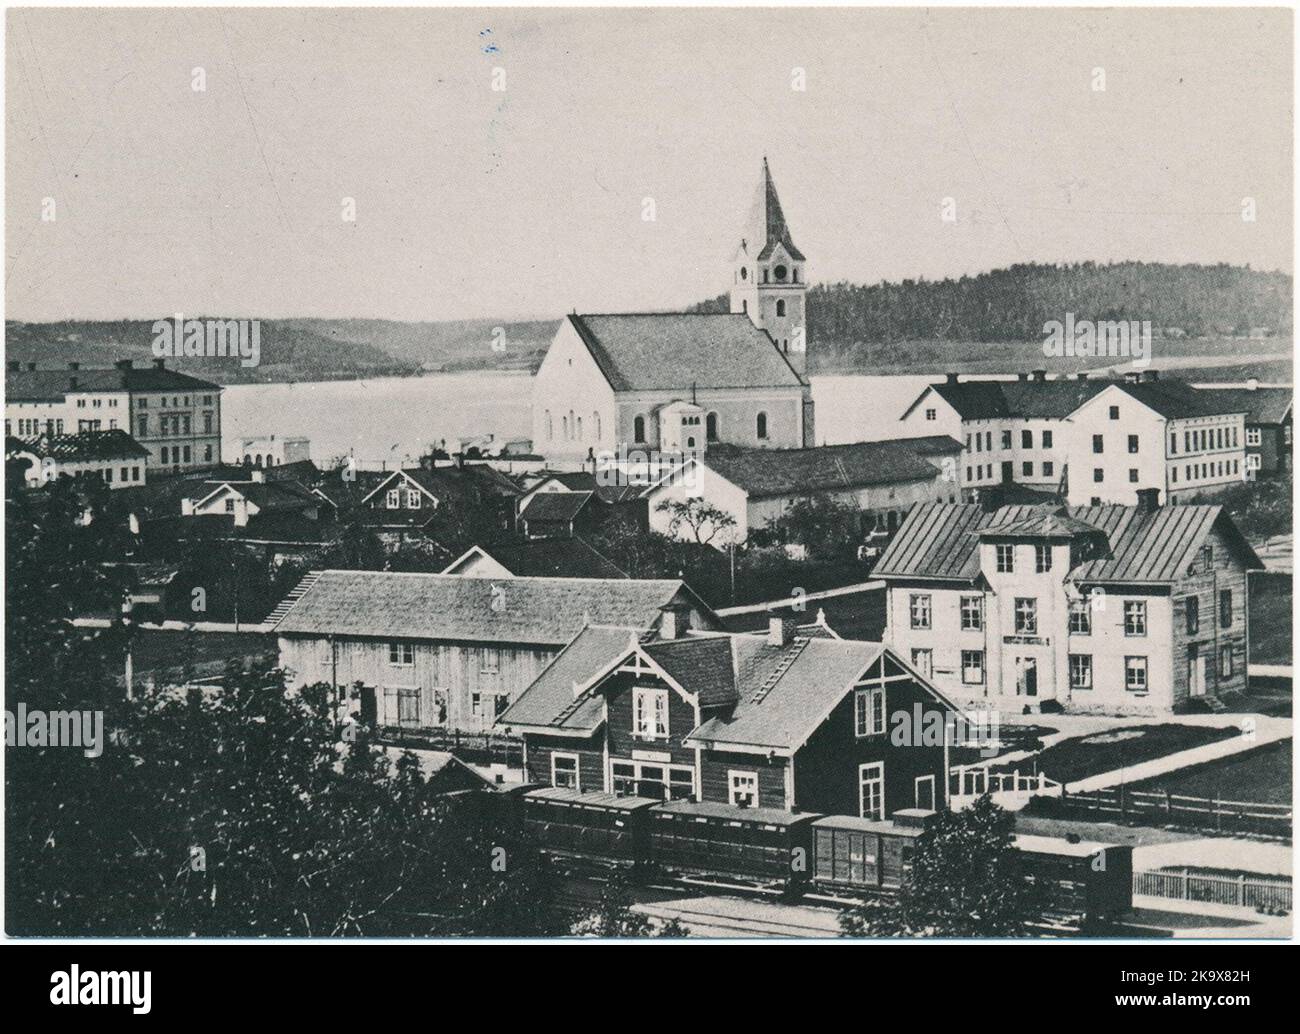 Lindesberg von Kyrkberget aus gesehen. Das Bild zeigt den zentralen Teil der Stadt, der nach dem Stadsladen 1869 wieder aufgebaut wurde. Stockfoto